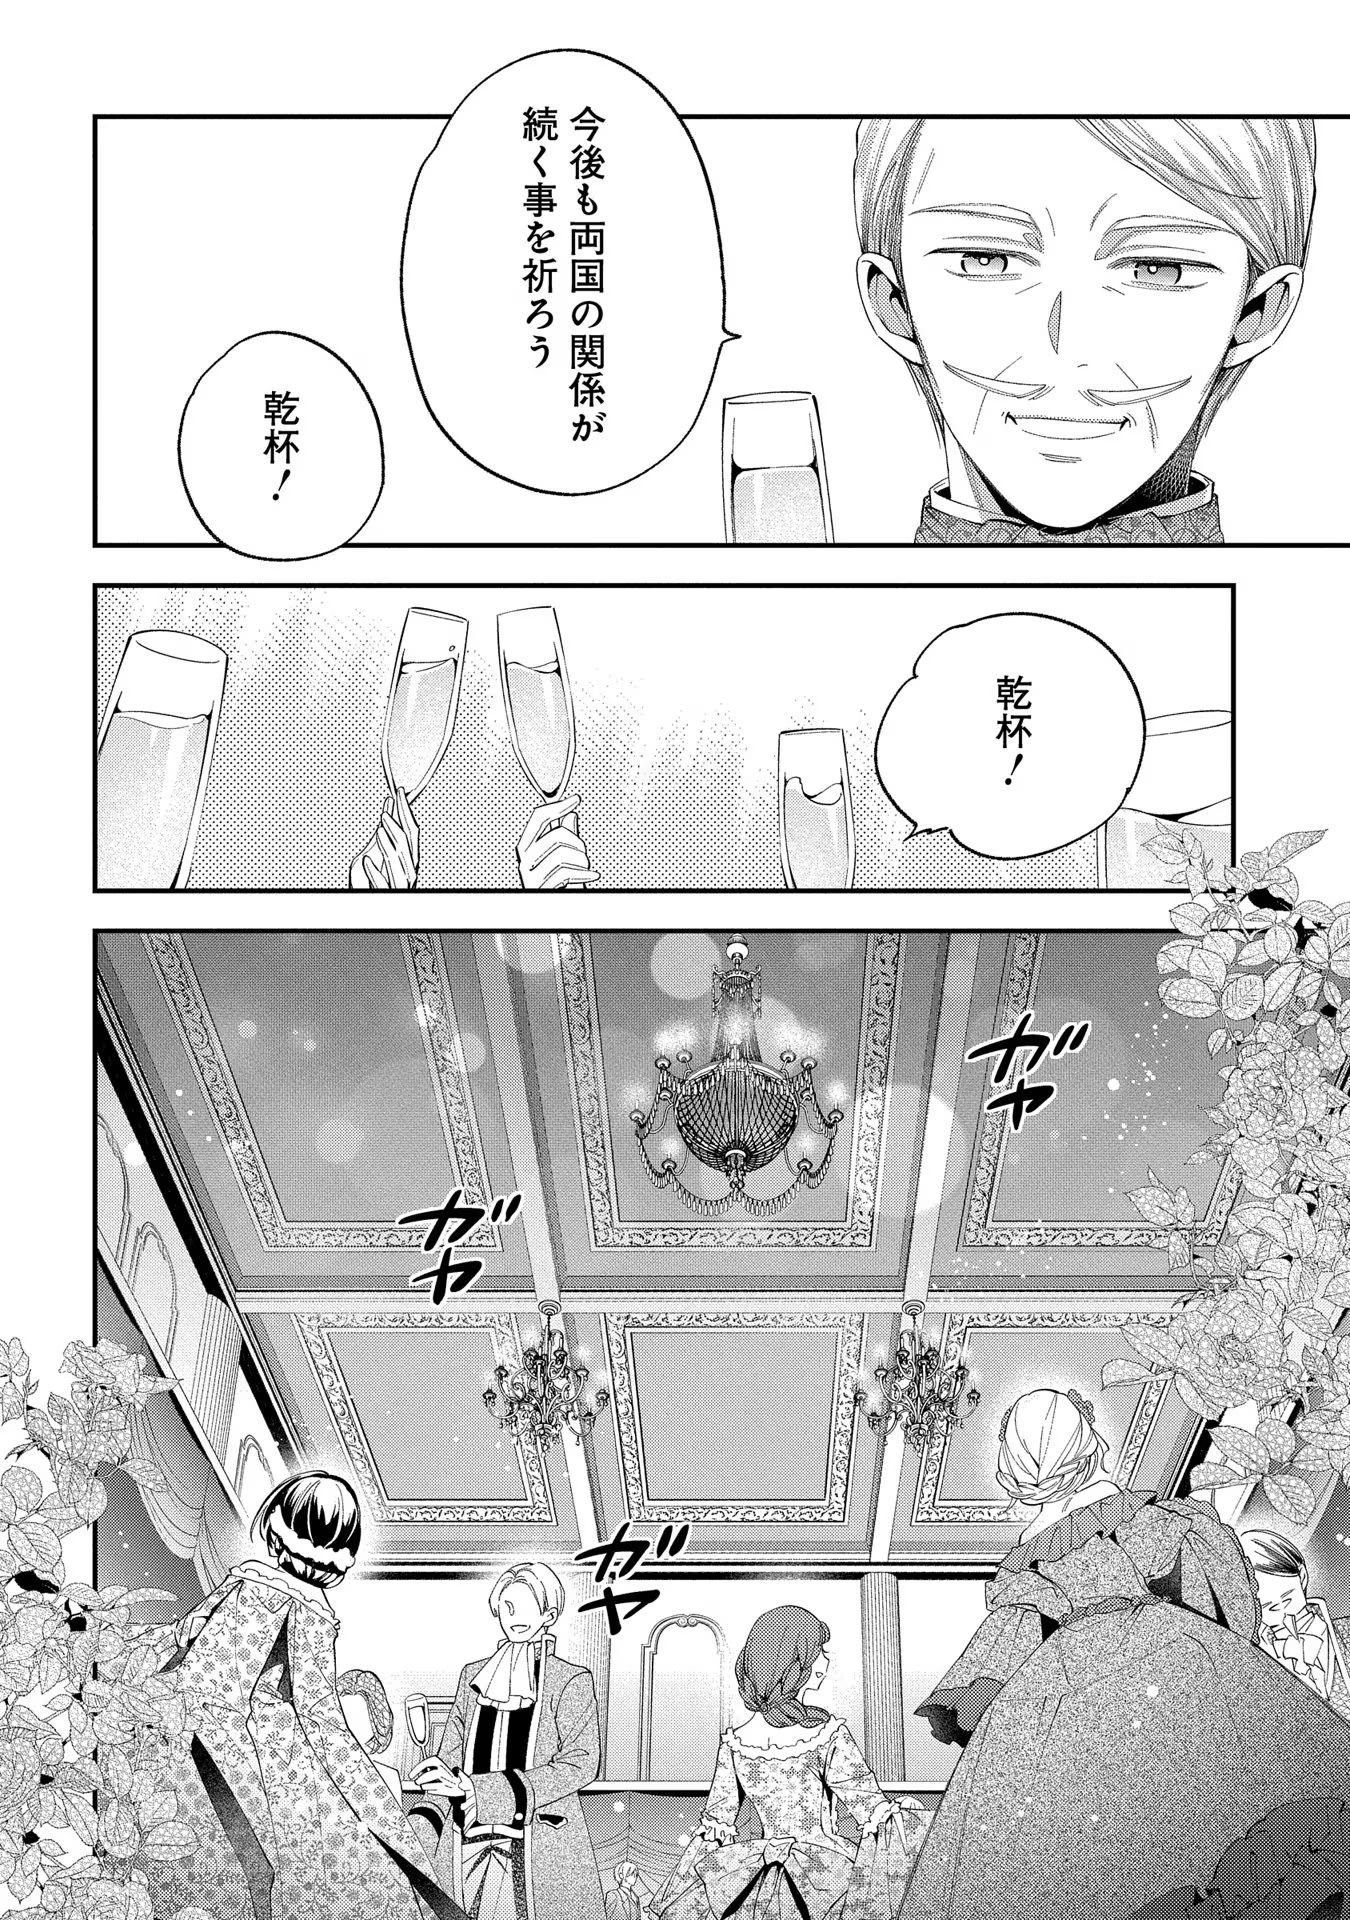 Outaishi ni Konyaku Hakisareta no de, Mou Baka no Furi wa Yameyou to Omoimasu - Chapter 11 - Page 2